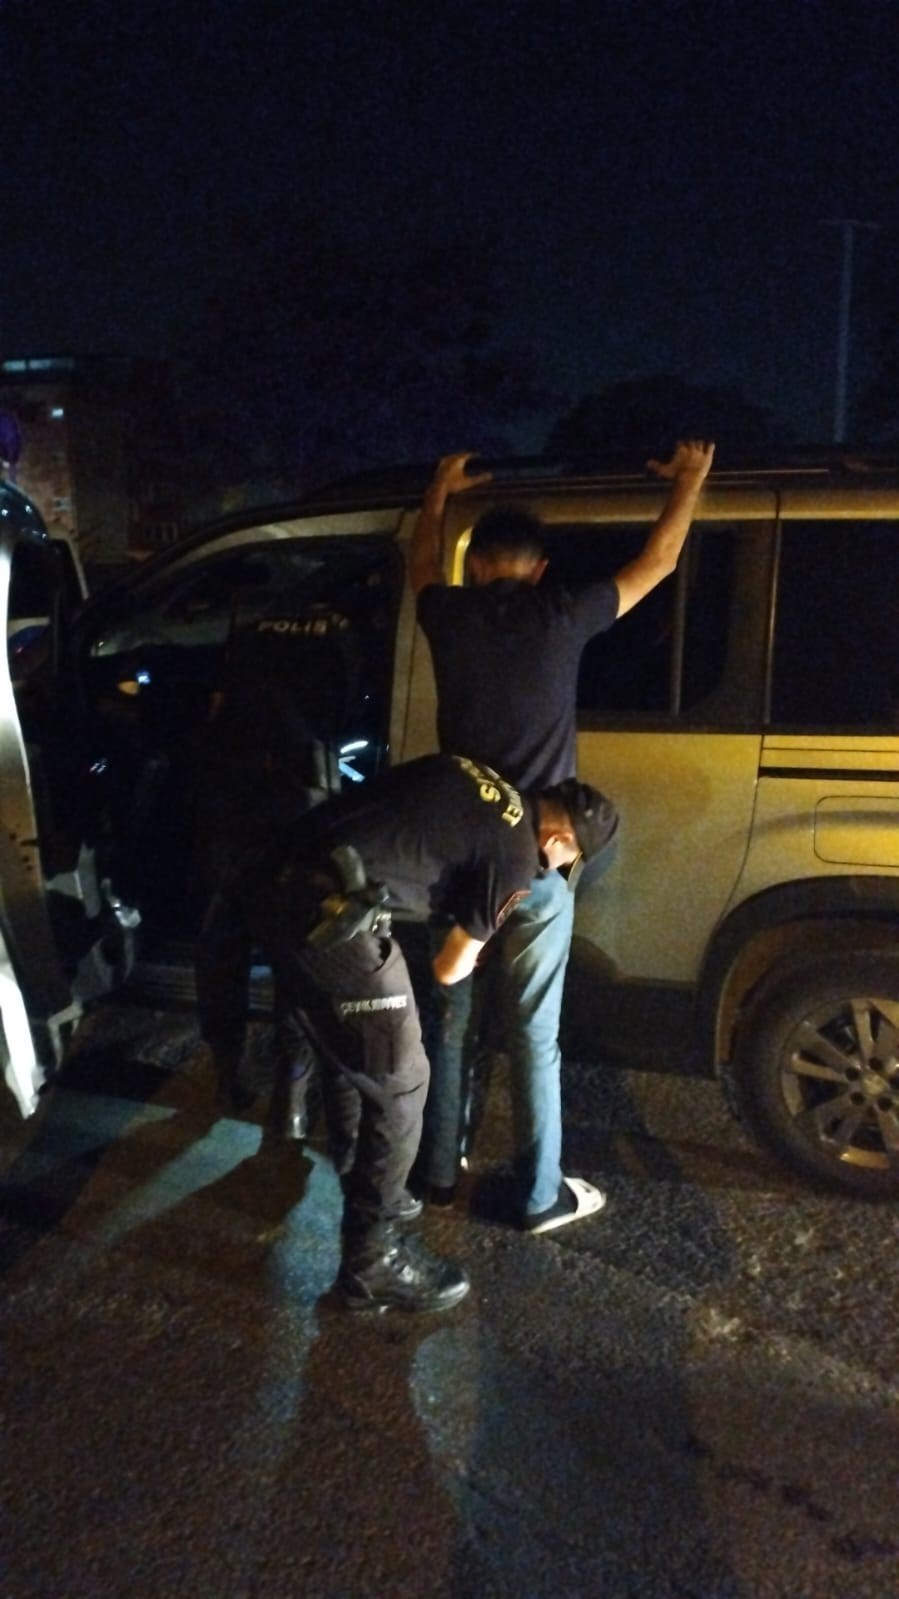 Bursa’da ’huzur’ uygulamaları devam ediyor: 3 kişi yakalandı